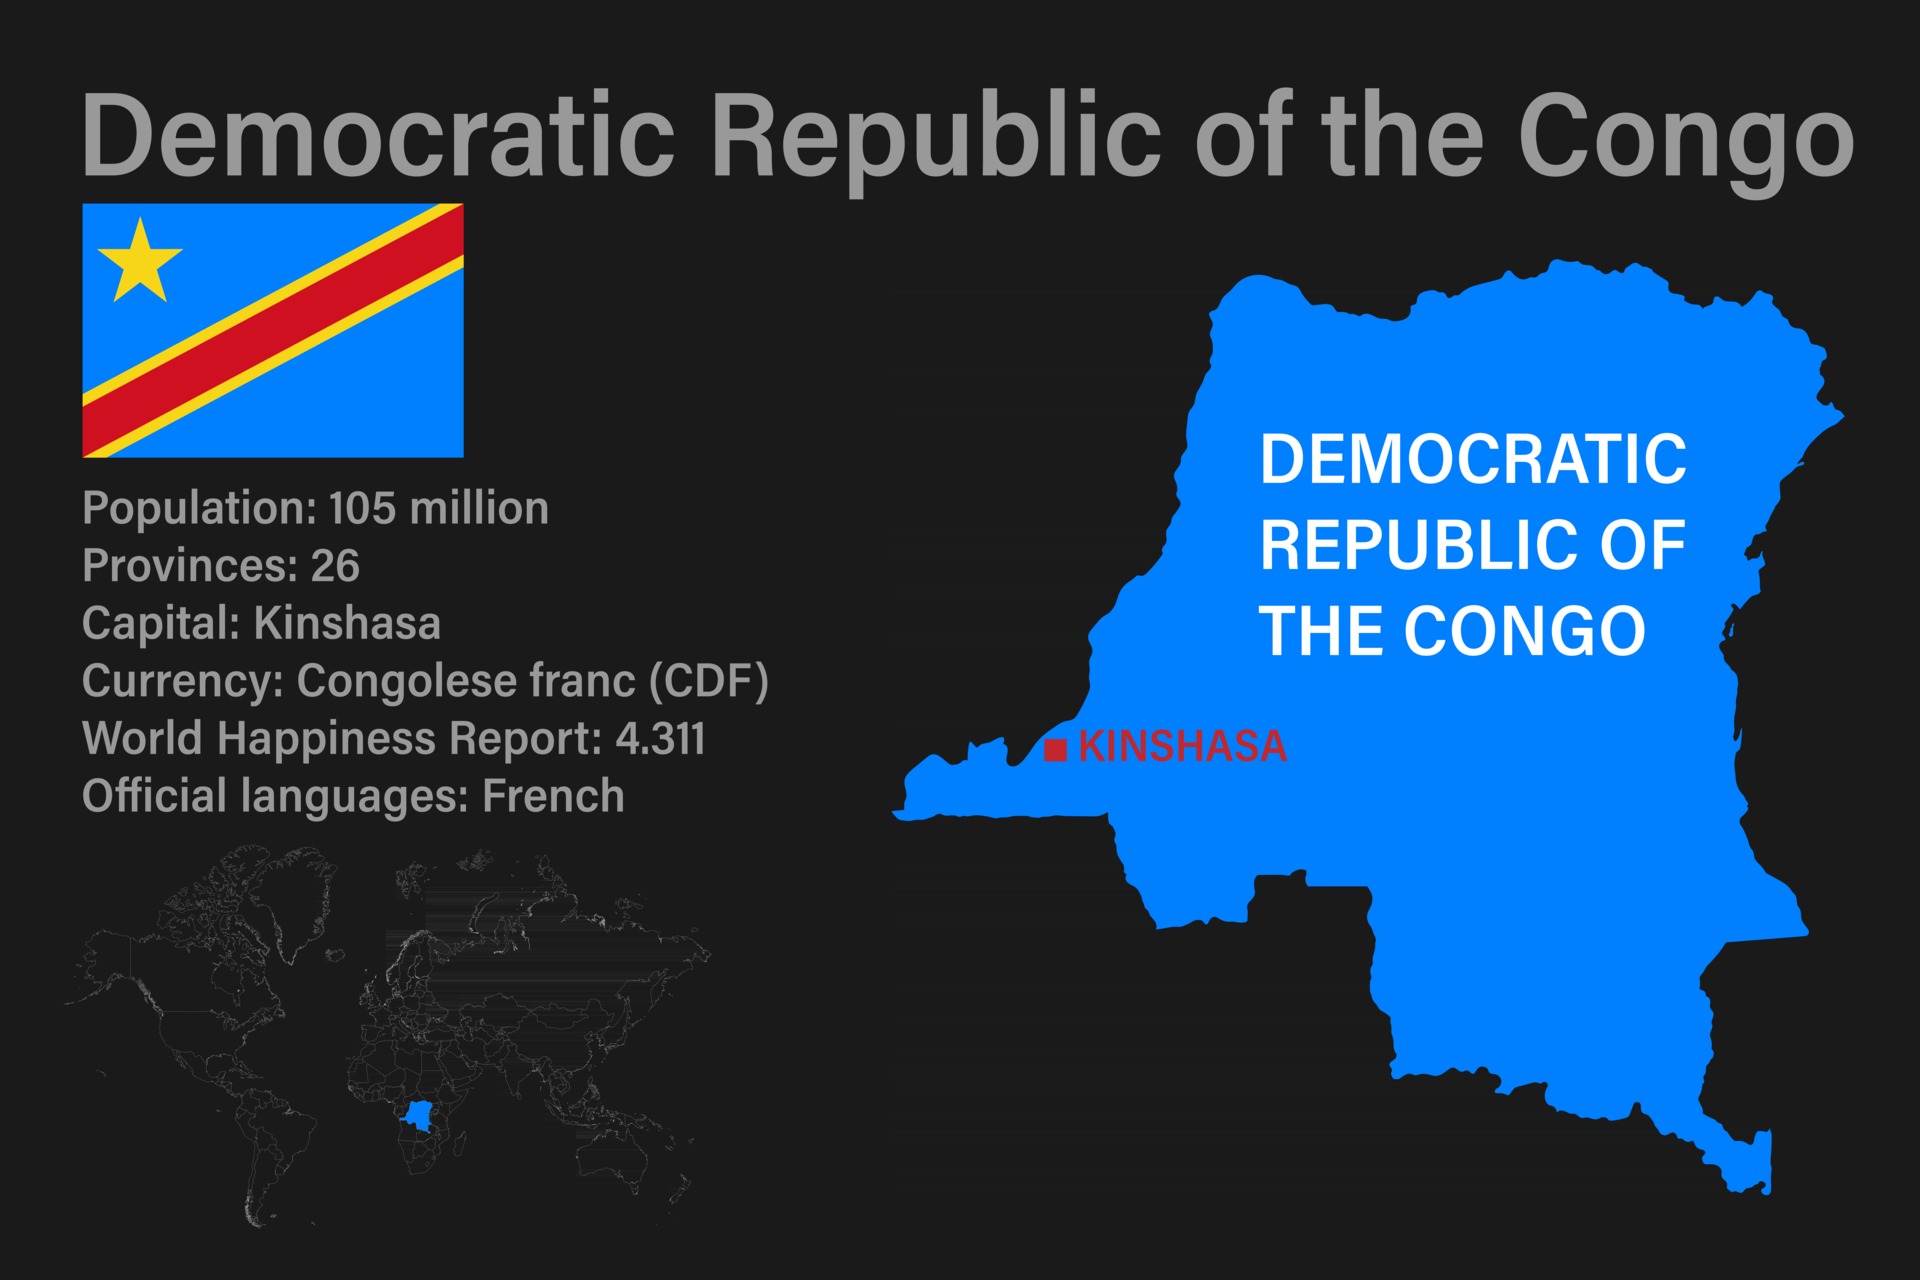 drapeau Congo-Kinshasa (République démocratique du Congo